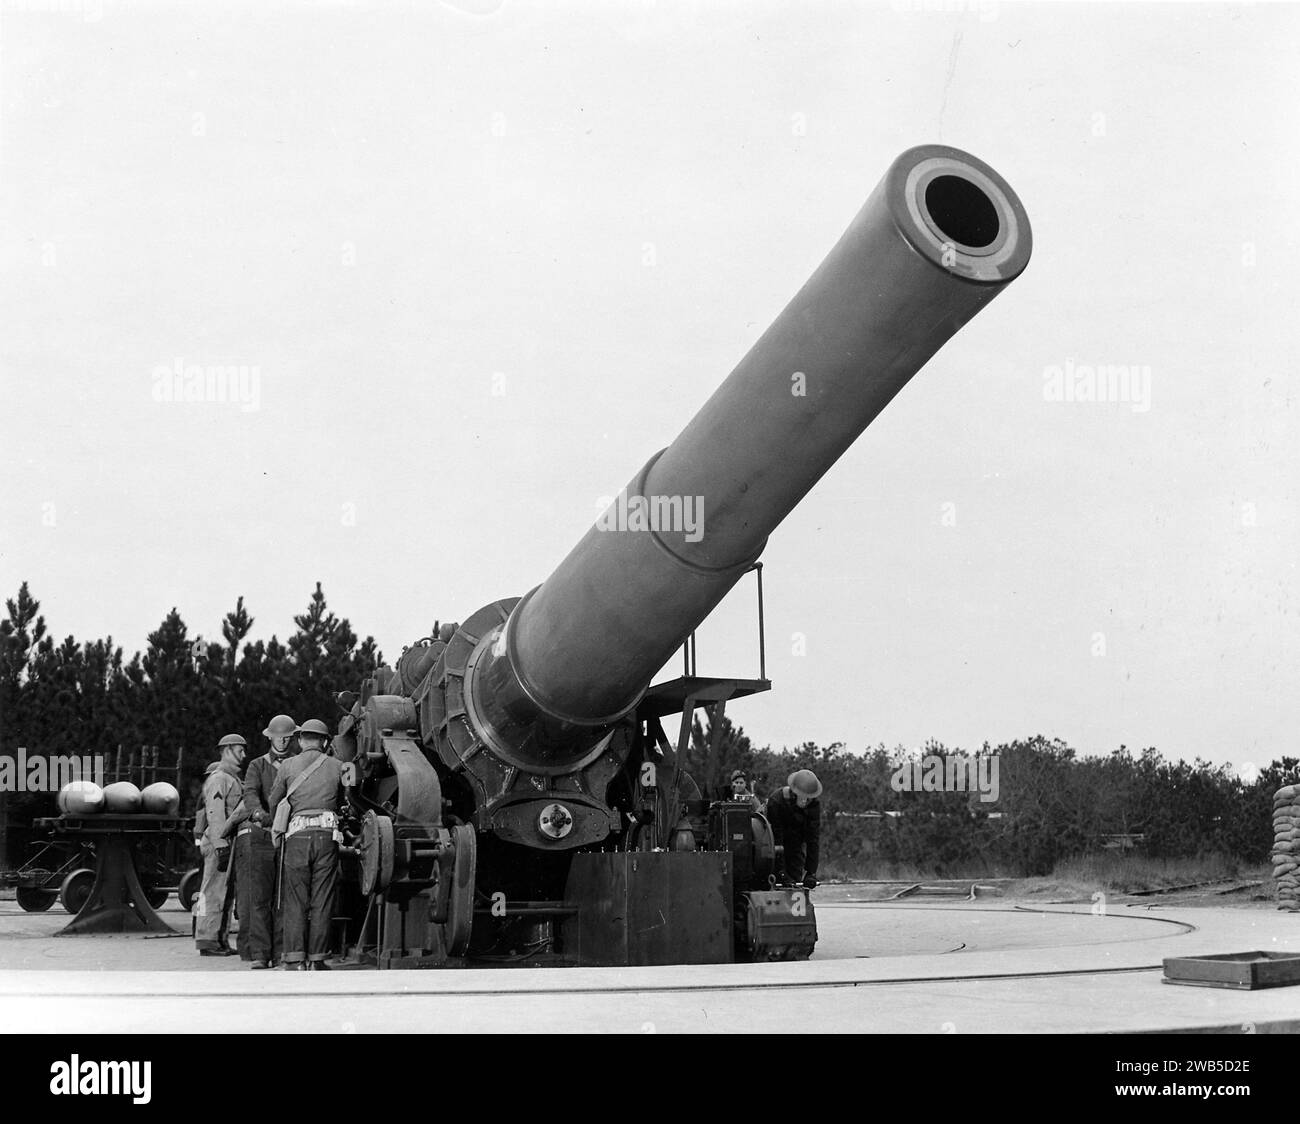 Un obice da 16 pollici a Fort Story, Virginia, America. L'obice da 16 pollici M1920 (406 mm) è un pezzo di artiglieria costiera Foto Stock